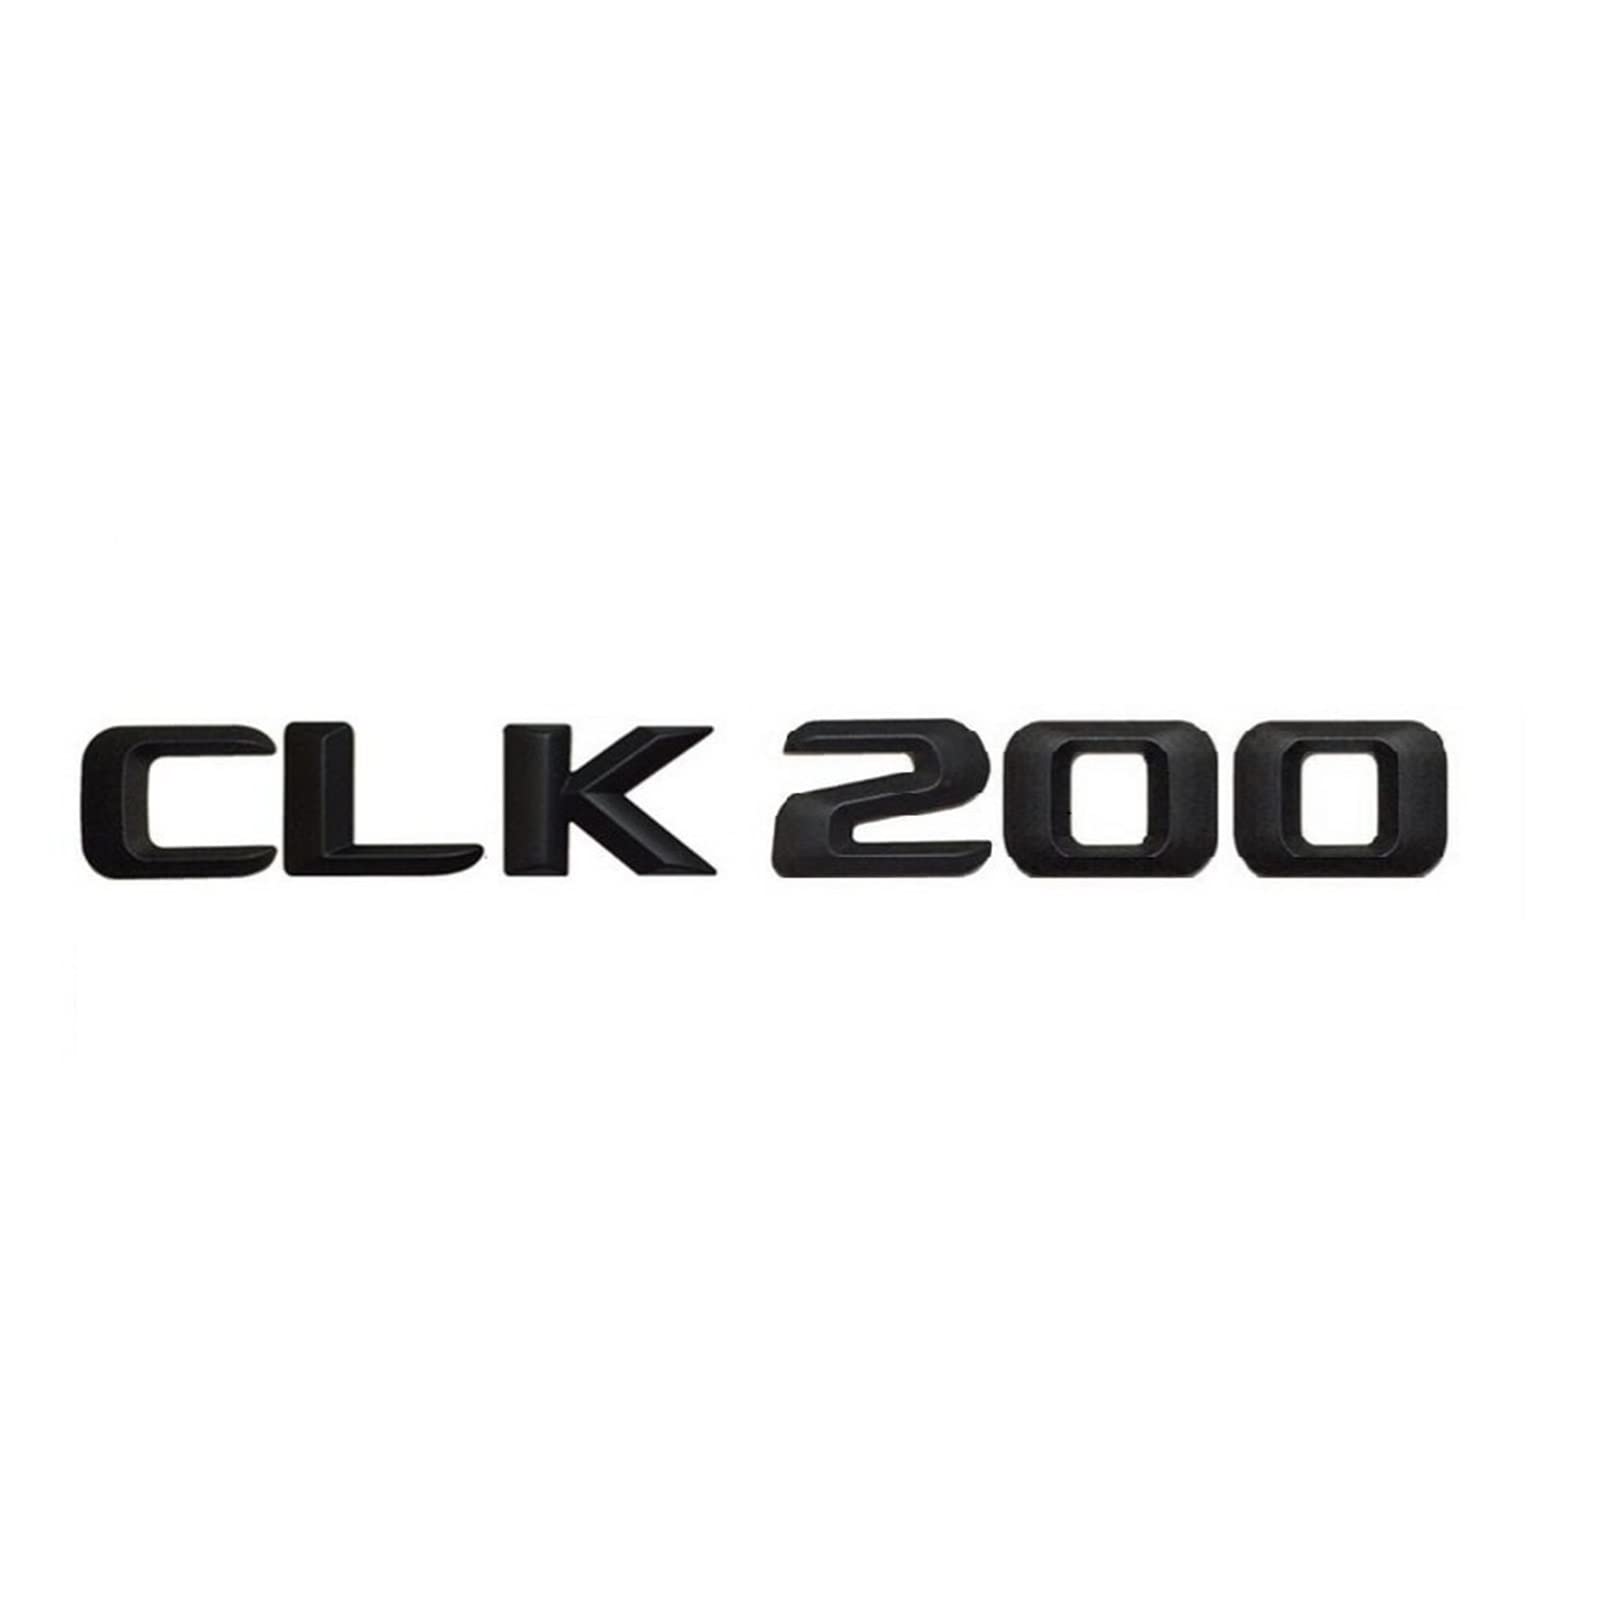 Mattschwarz CLK 200" Auto Trunk Hinterbuchstaben Word Abzeichen Emblem Brief Aufkleber Aufkleber for Mercedes Benz geeignet CLK Klasse CLK200 von LOTOAK